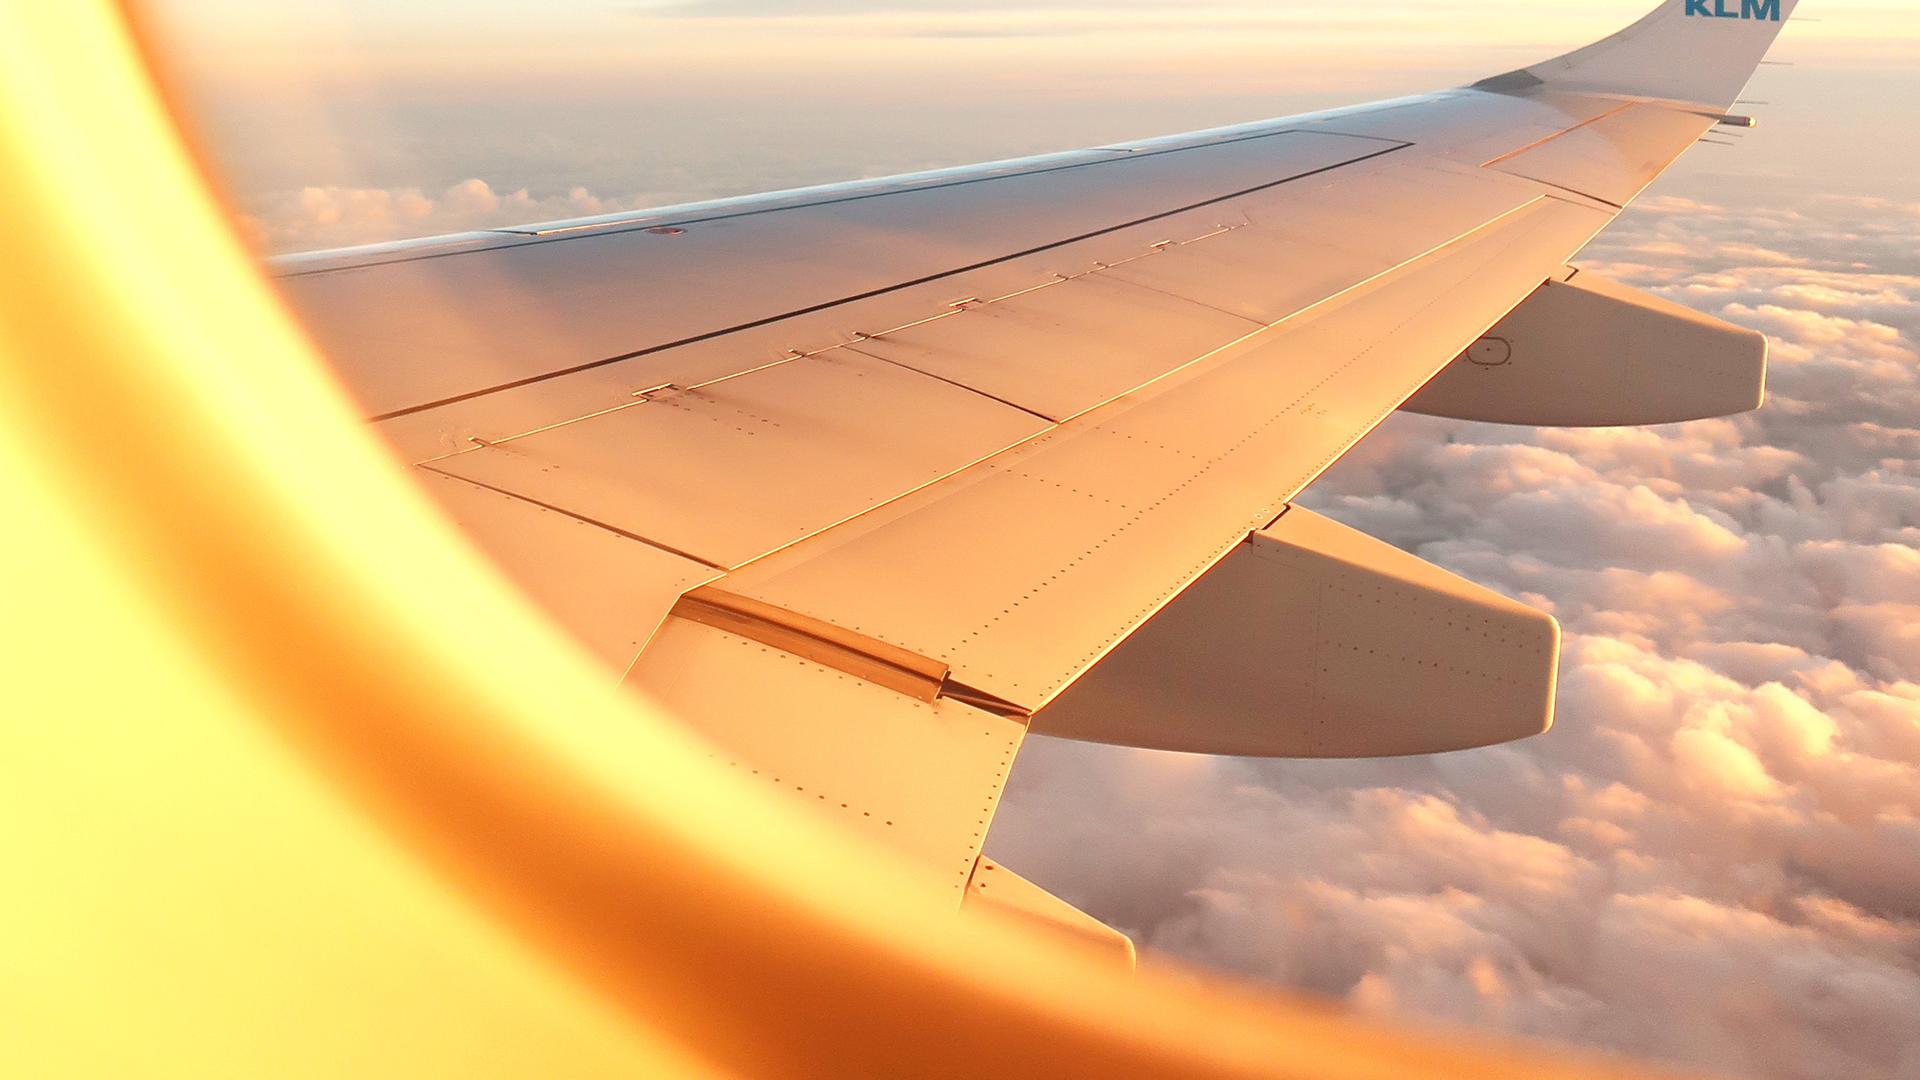 Blick aus dem Kabinenfenster auf die Tragfläche eines Flugzeuges. Im oberen Bereich blauer Himmel, darunter eine dichte, weiße Wolkendecke.